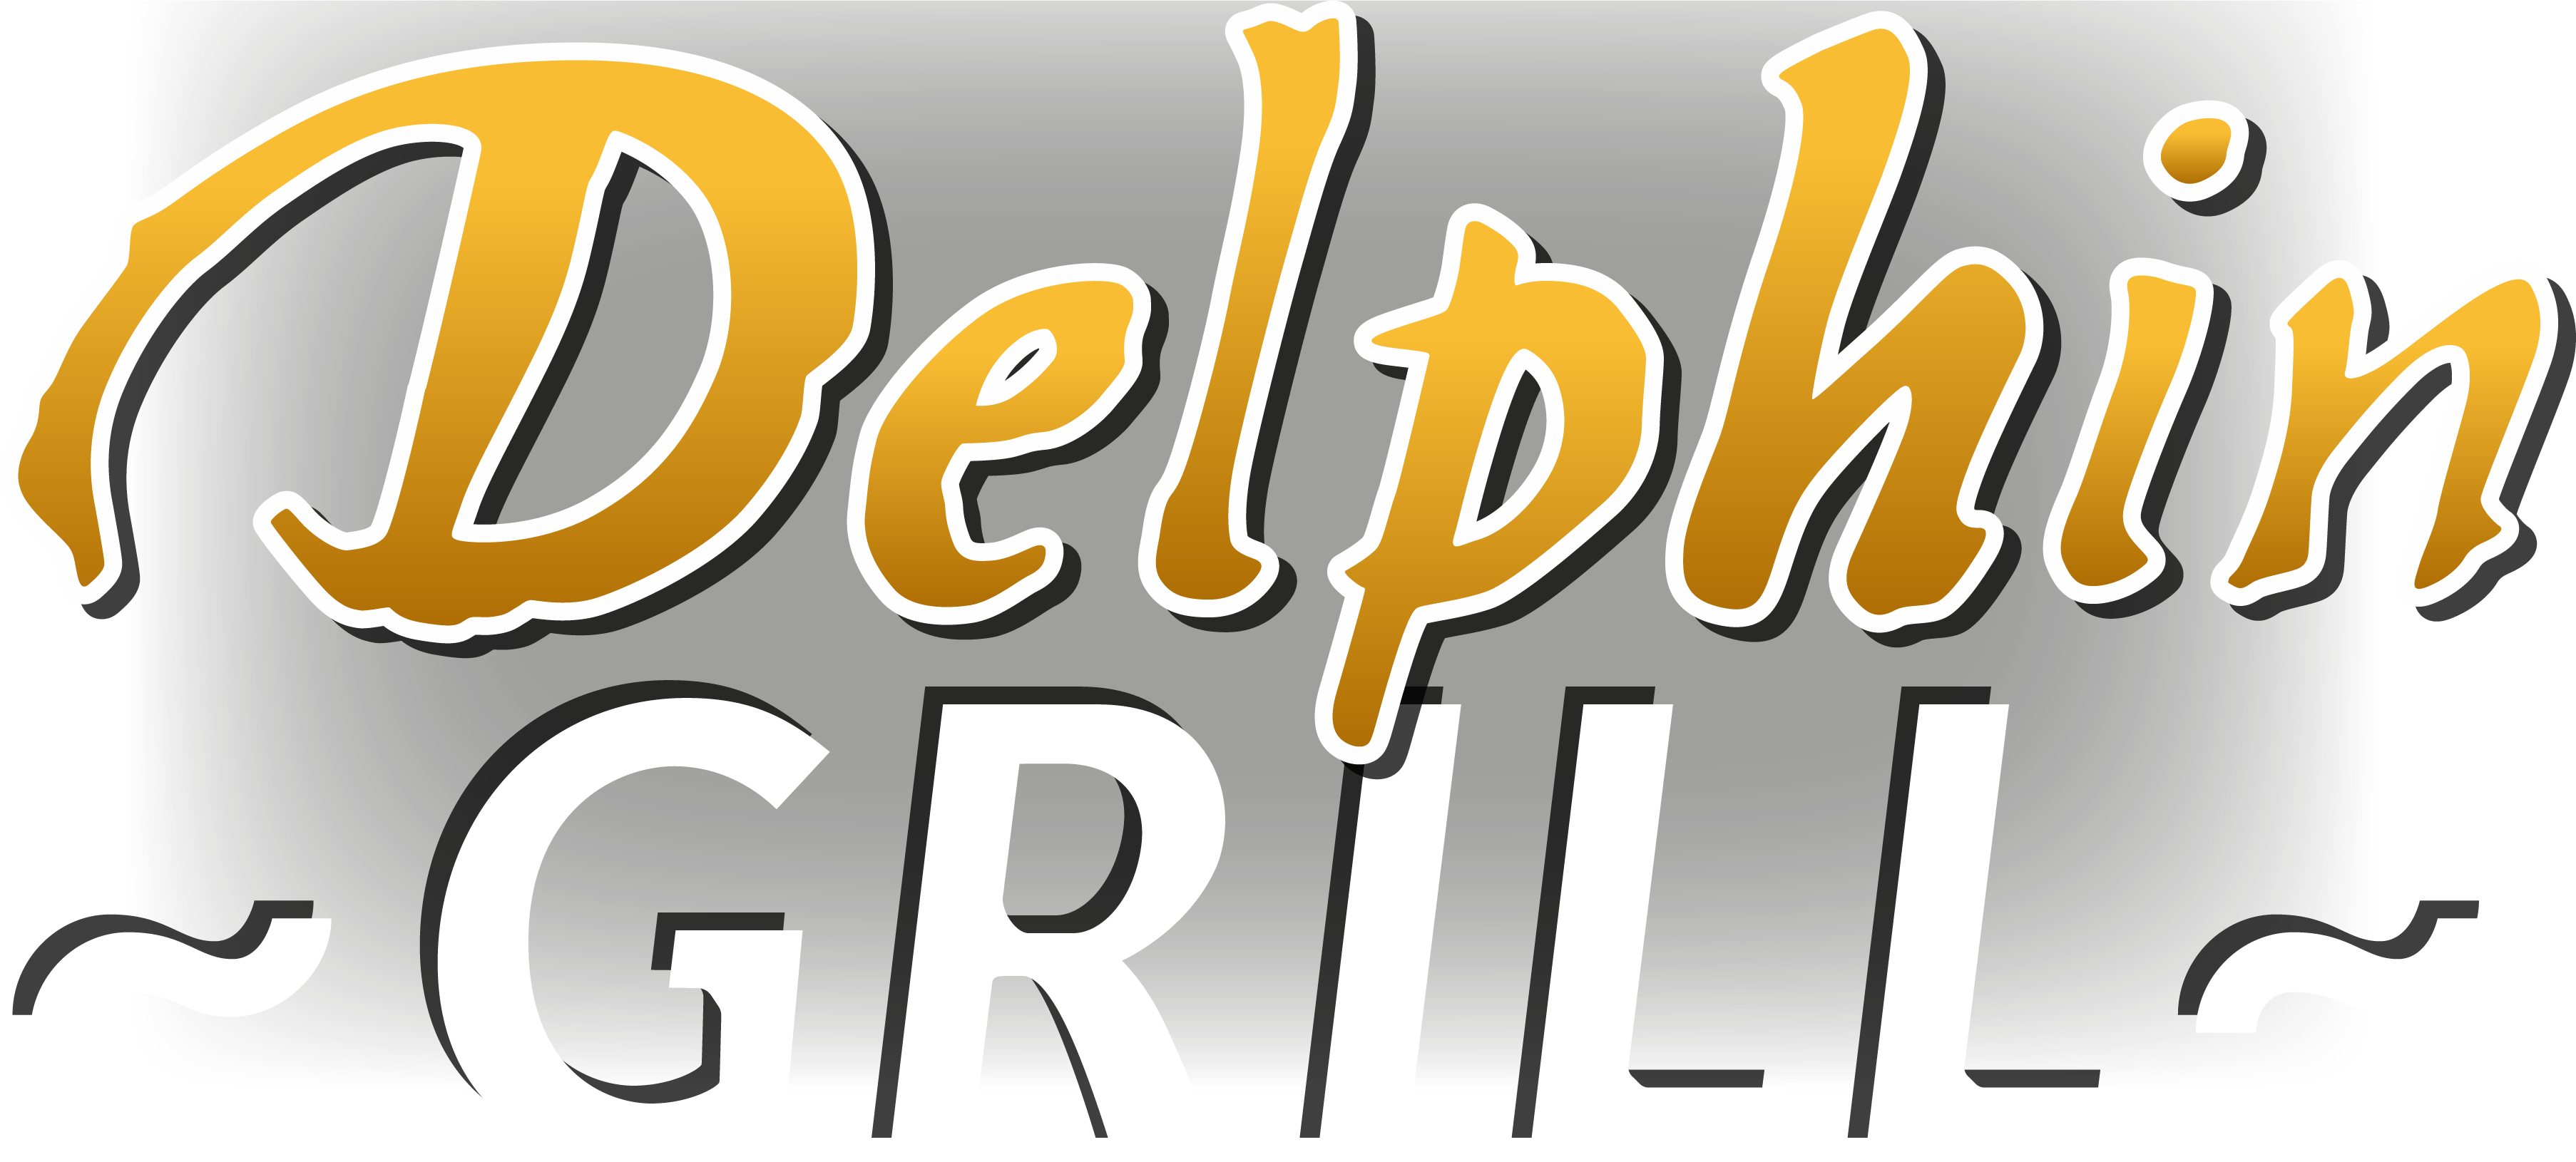 (c) Delphin-grill.de